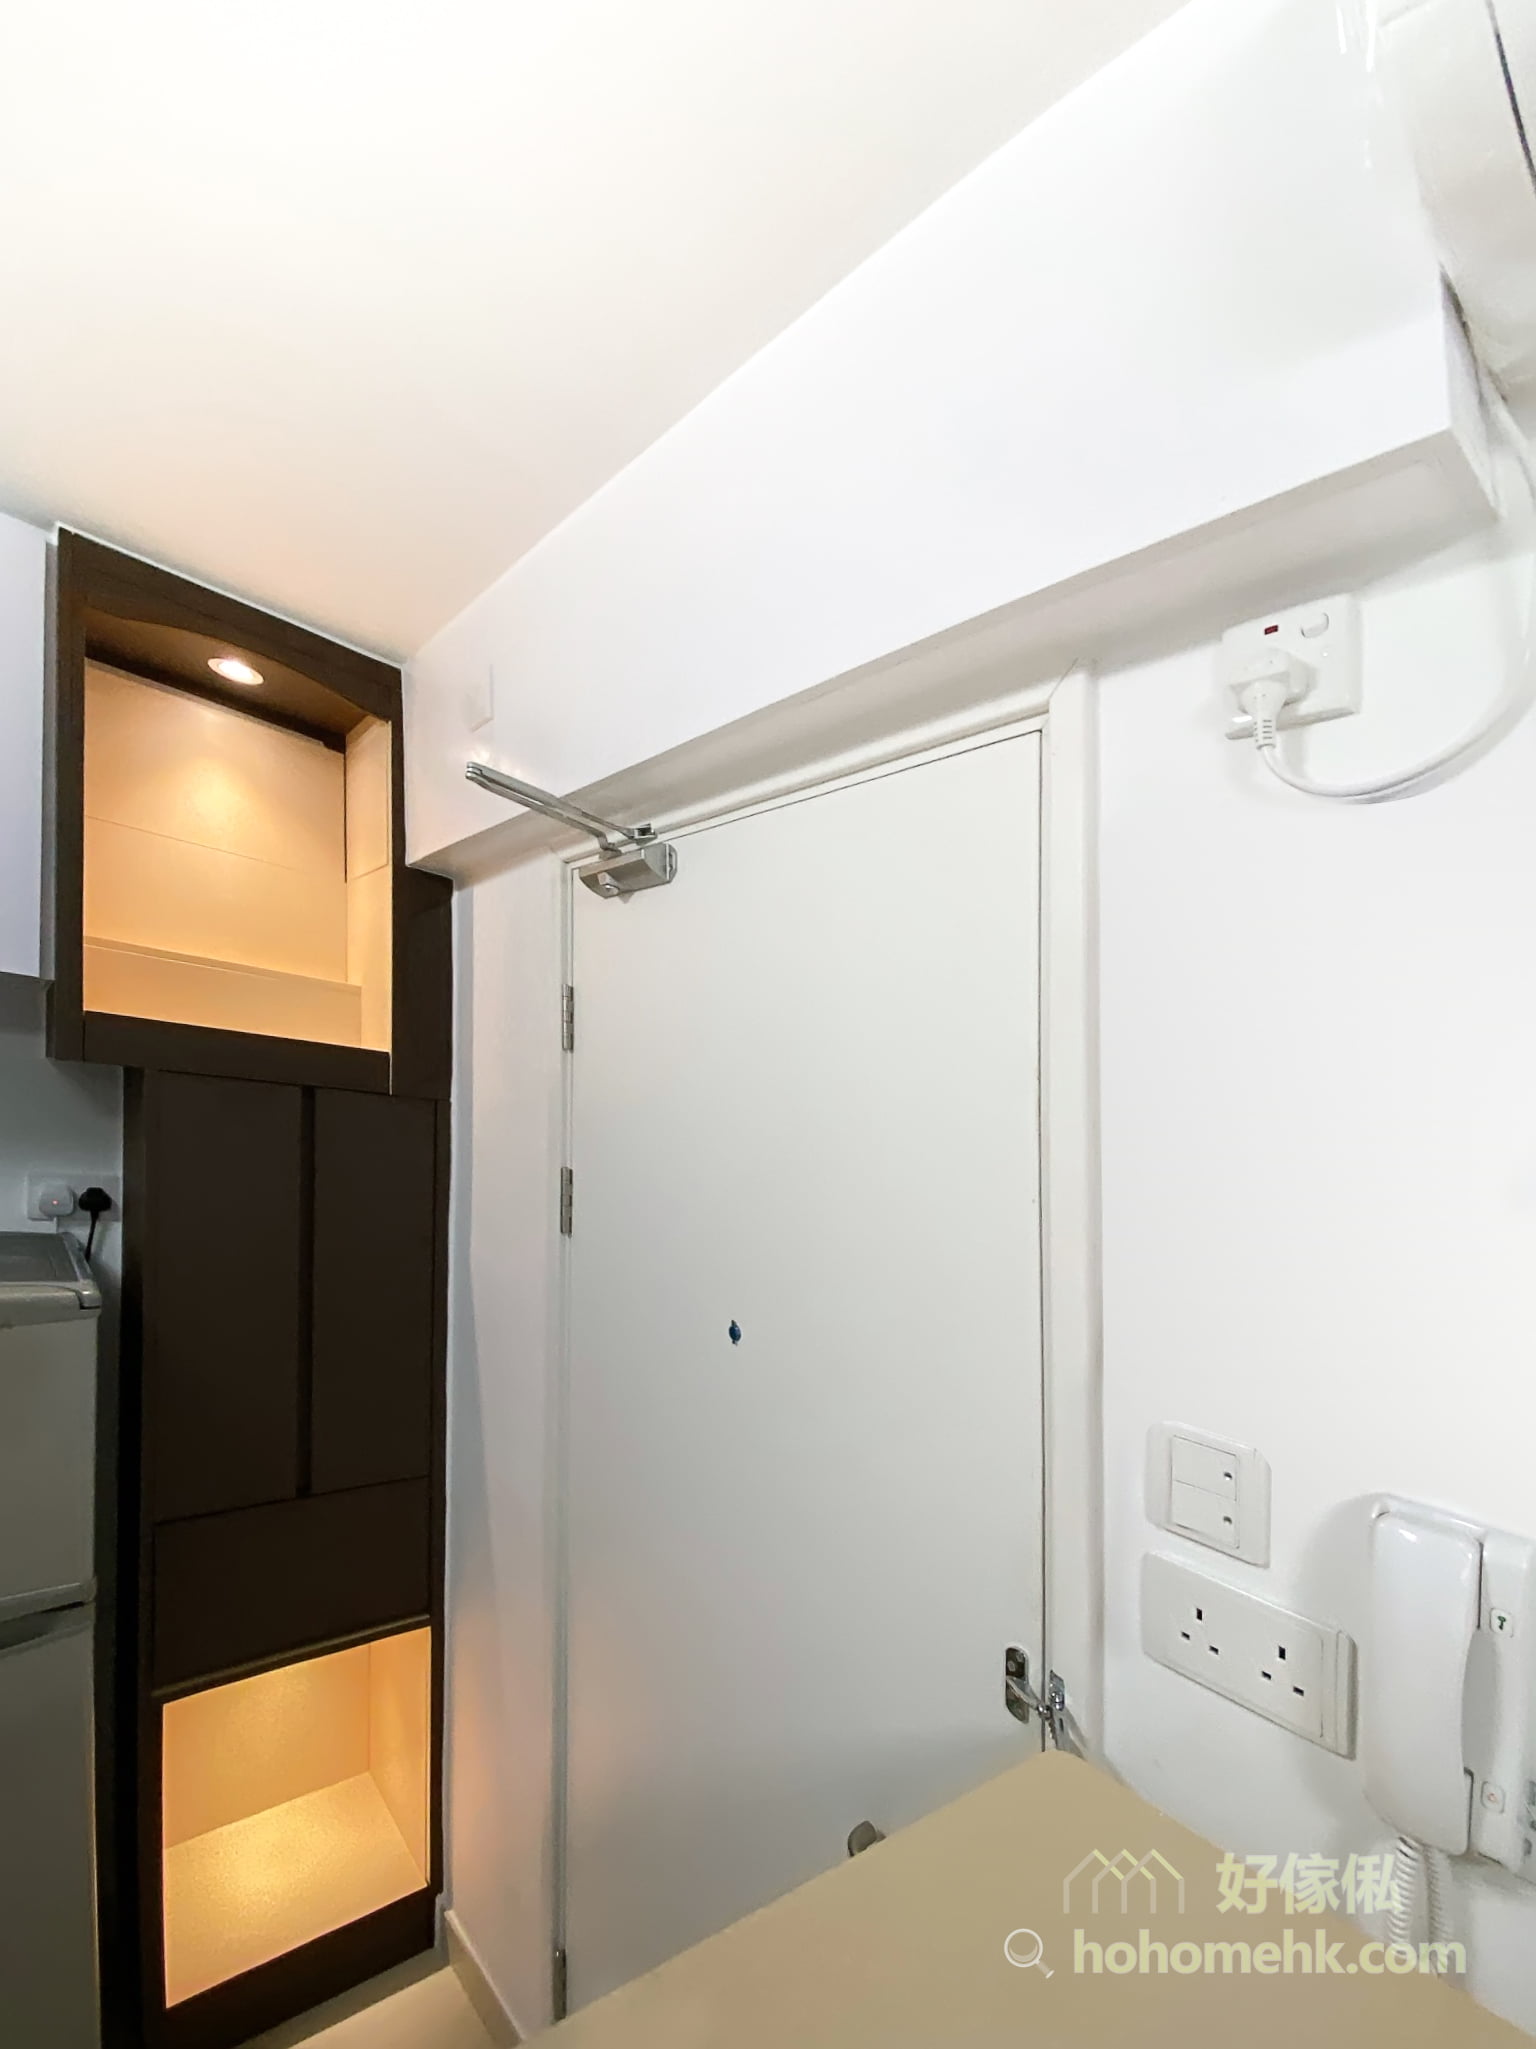 隱藏冷氣喉的吊櫃，可因應空間的佈局，打造成具有收納機能的儲物吊櫃，並在底板裝上射燈或燈帶，成為空間的輔助照明